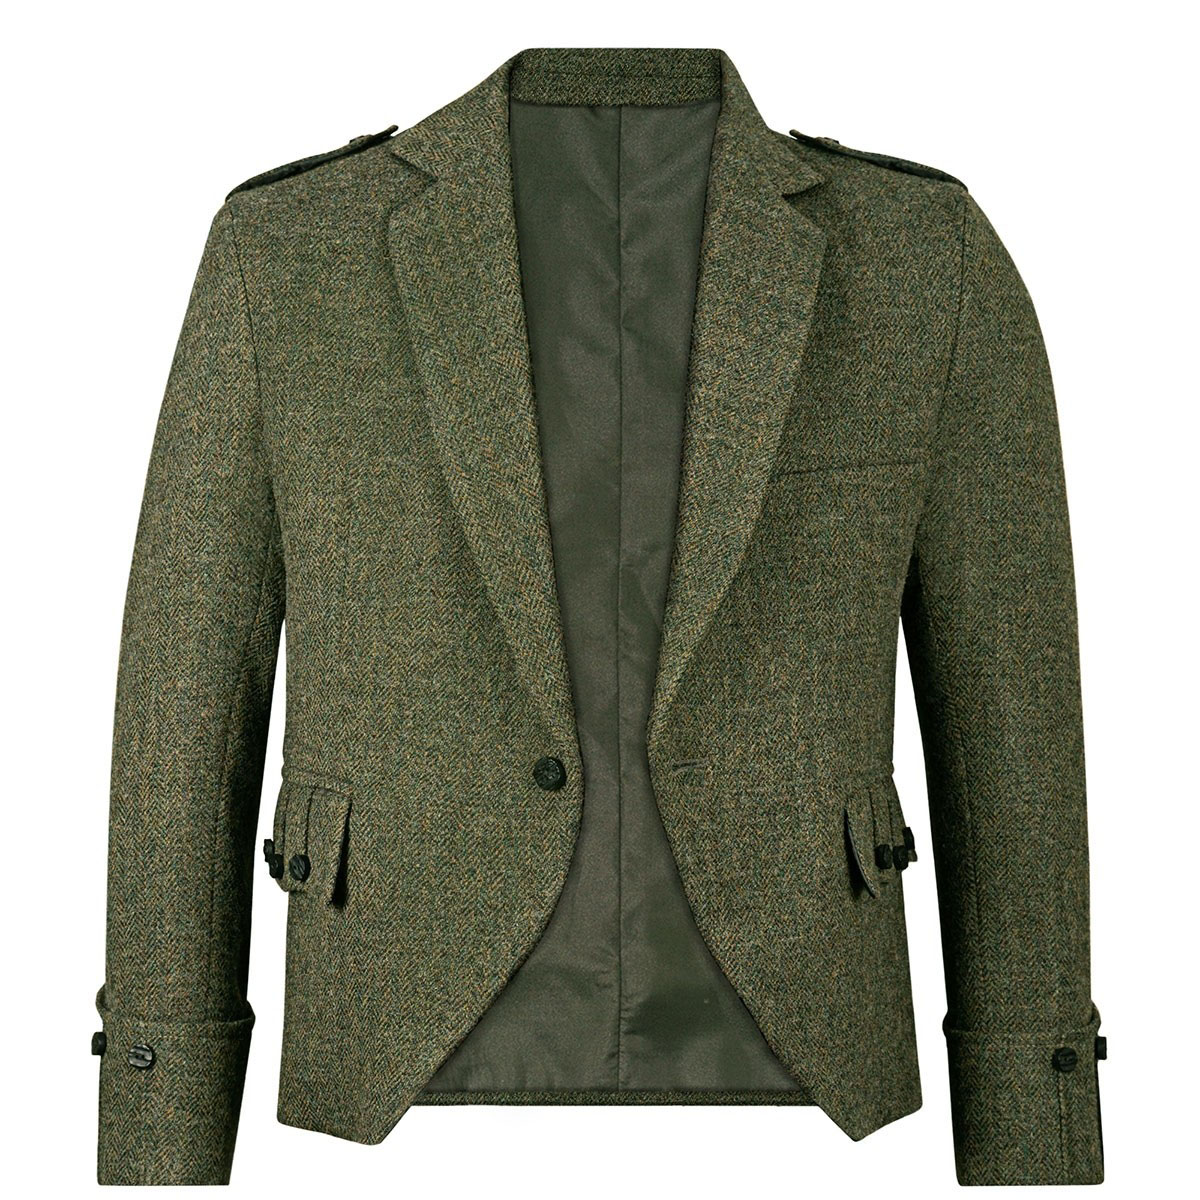 Tweed Argyle Jacket